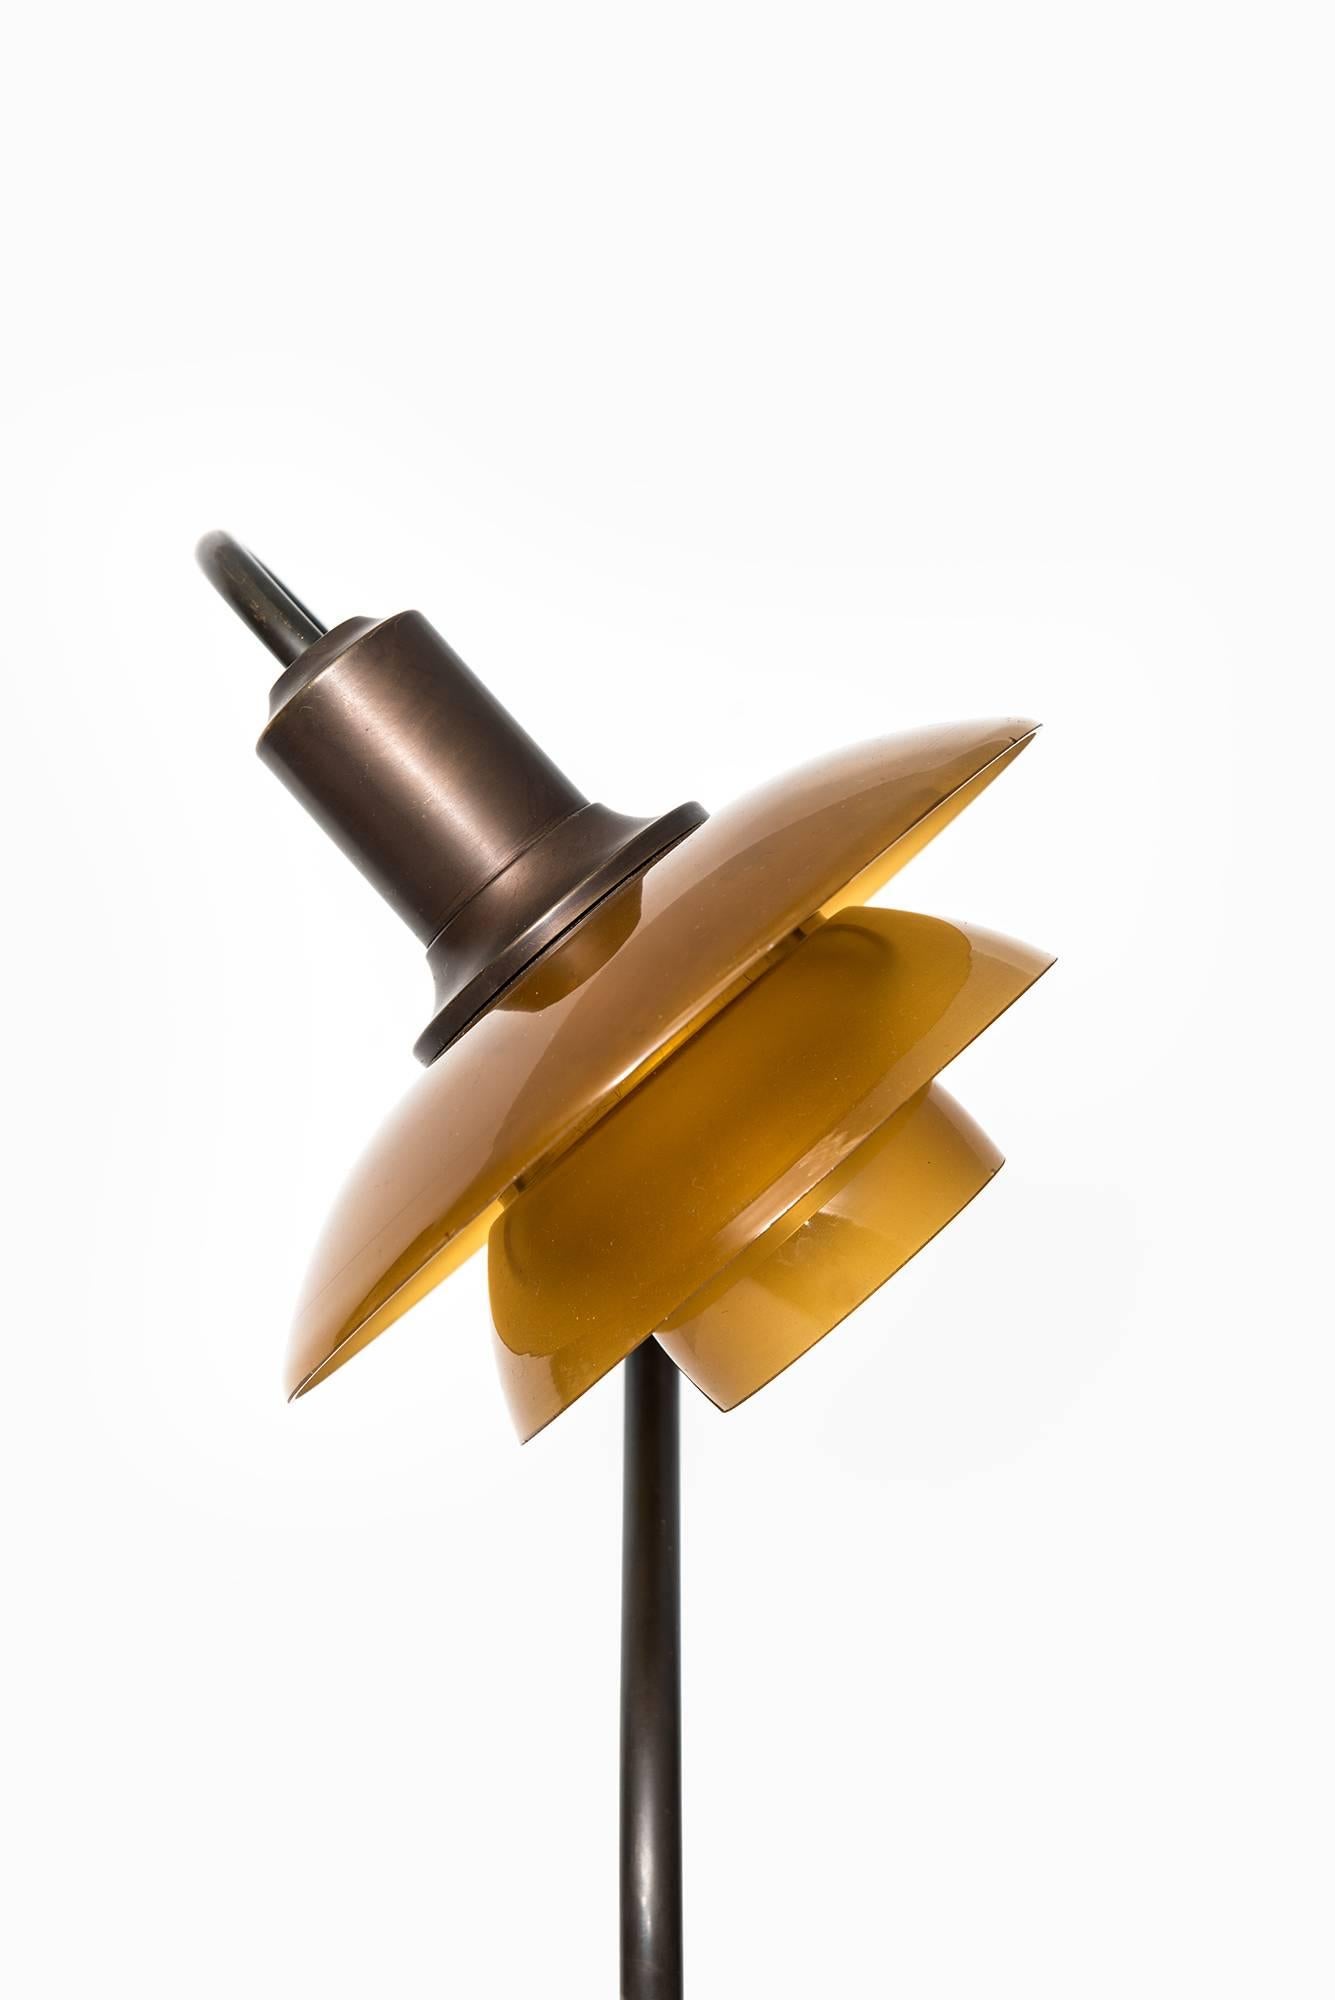 Danish Poul Henningsen Table Lamp Model PH-2/2 by Louis Poulsen in Denmark